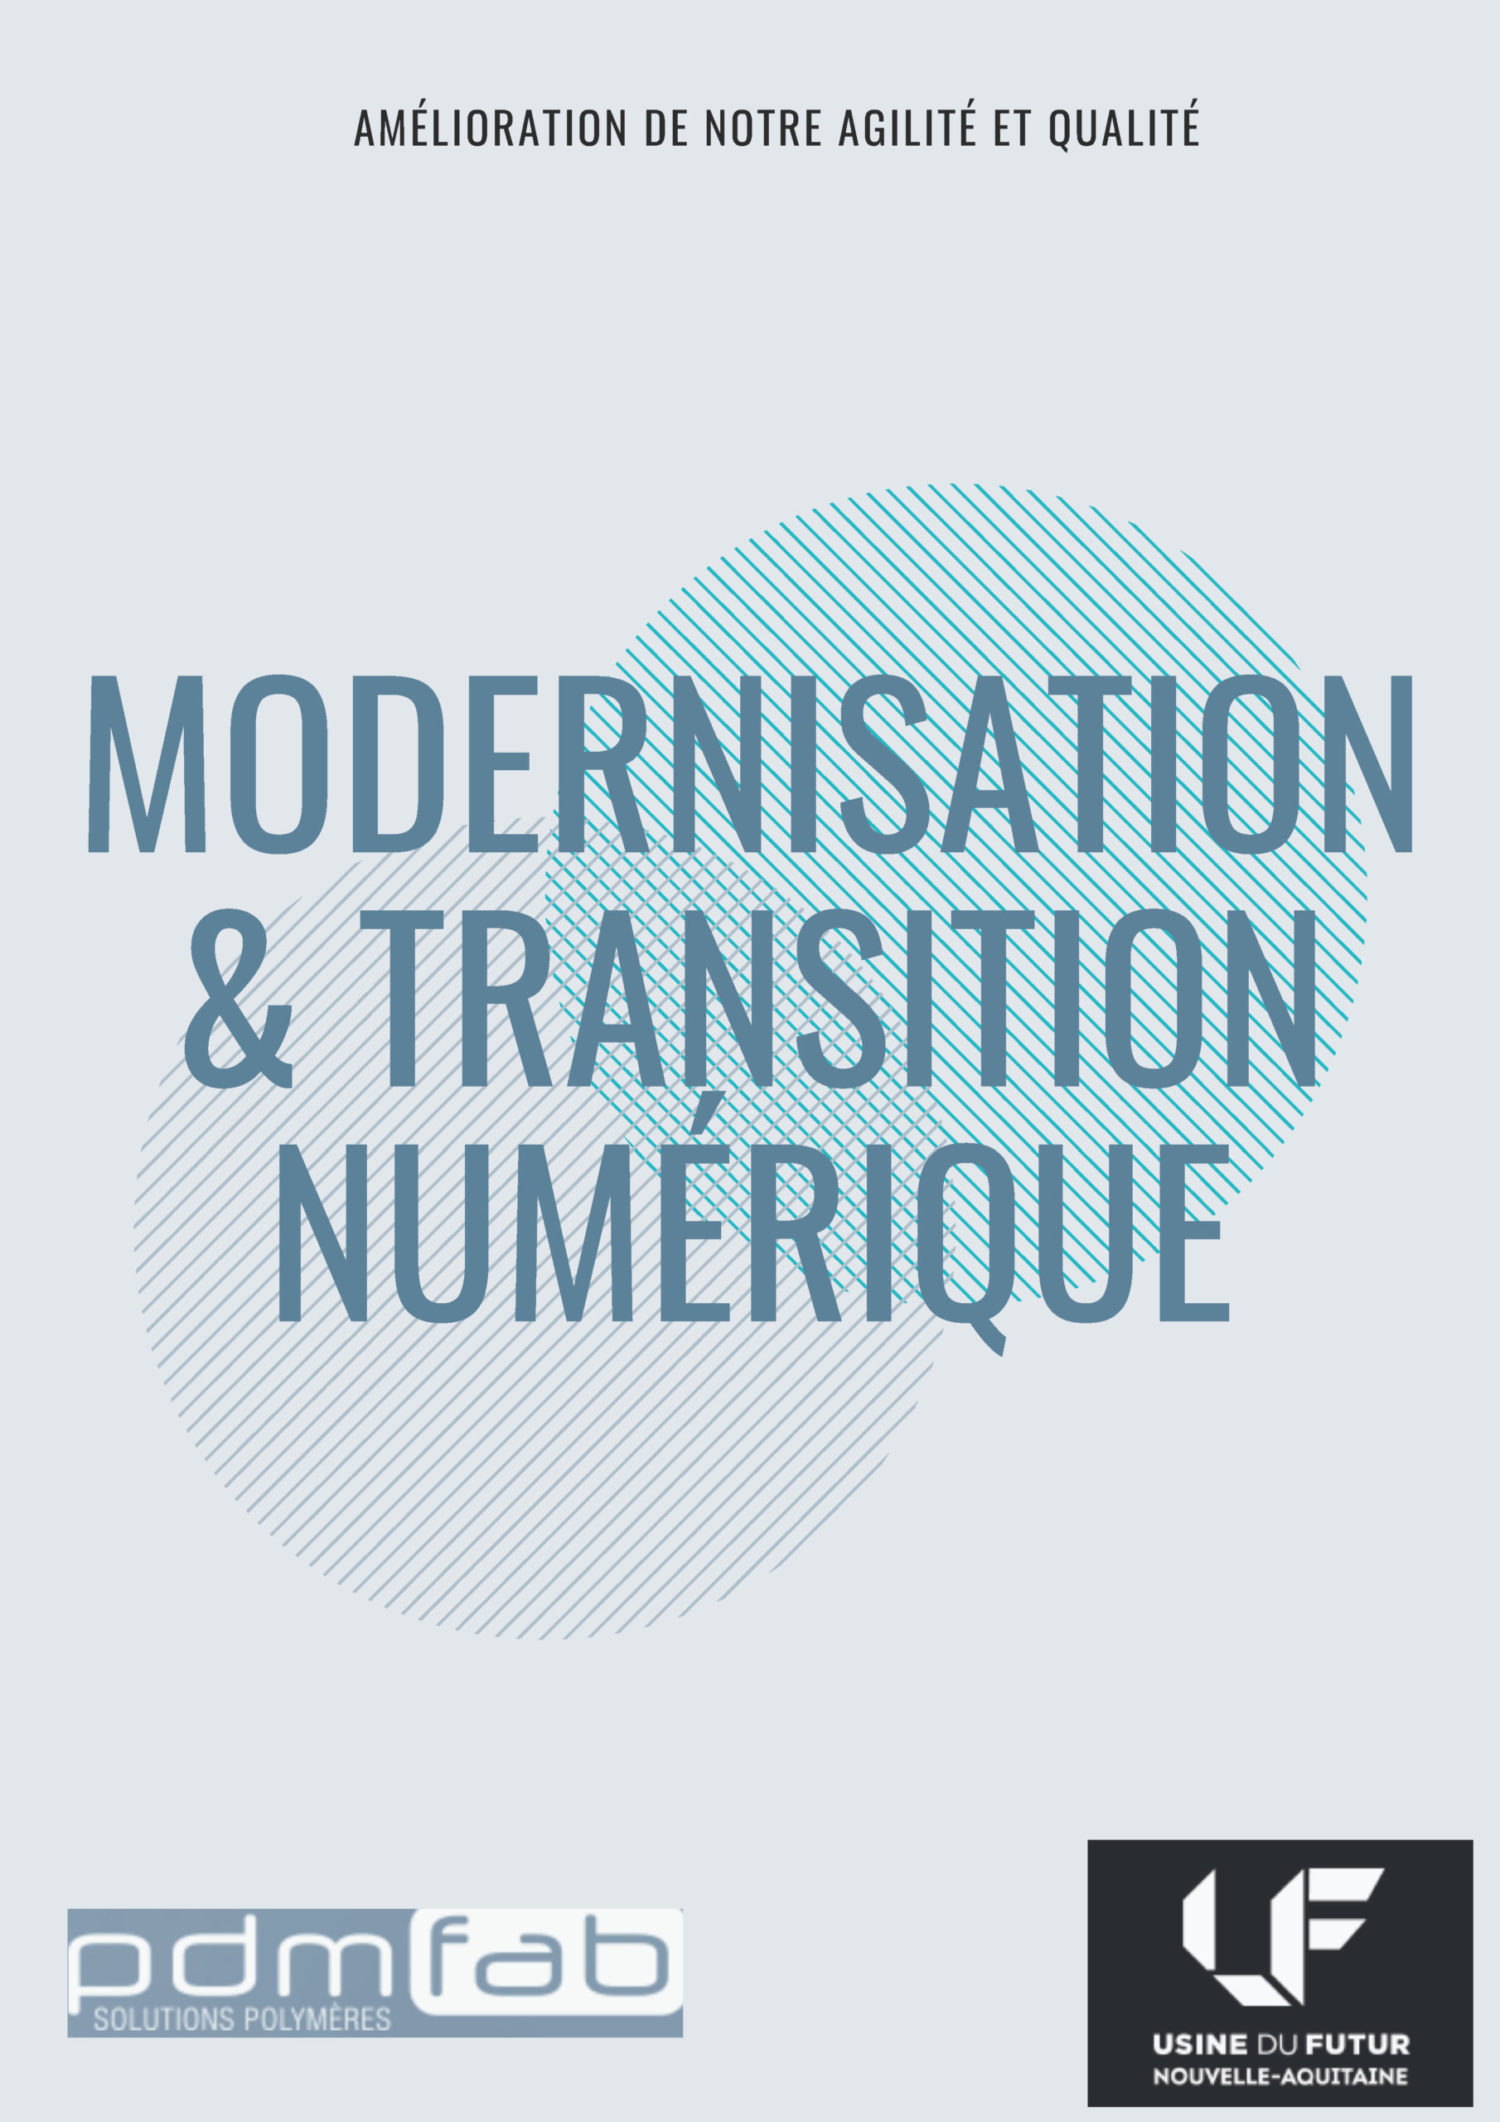 Modernisation & Transition numérique